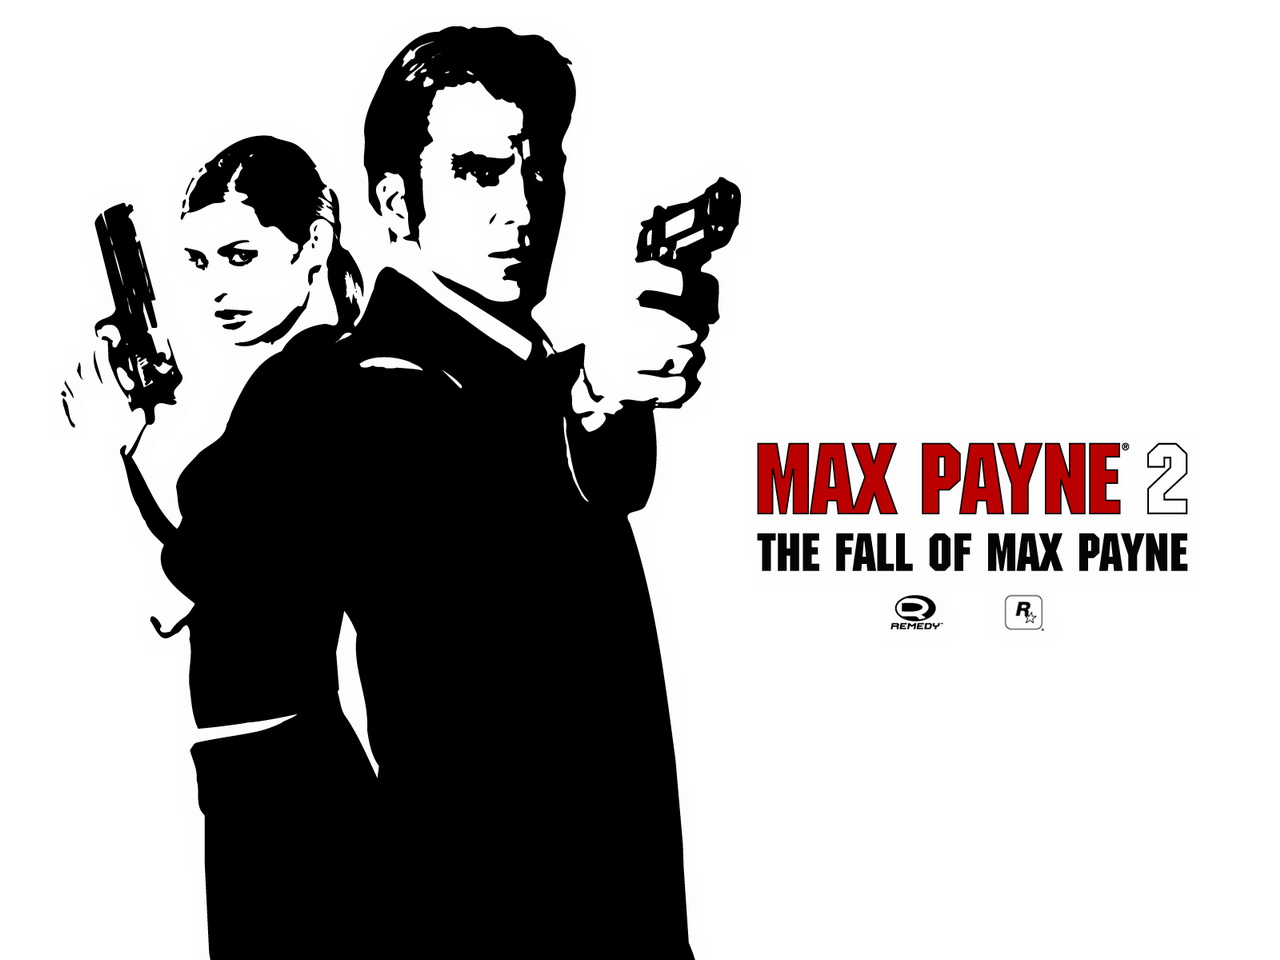 Max Payne.jpg